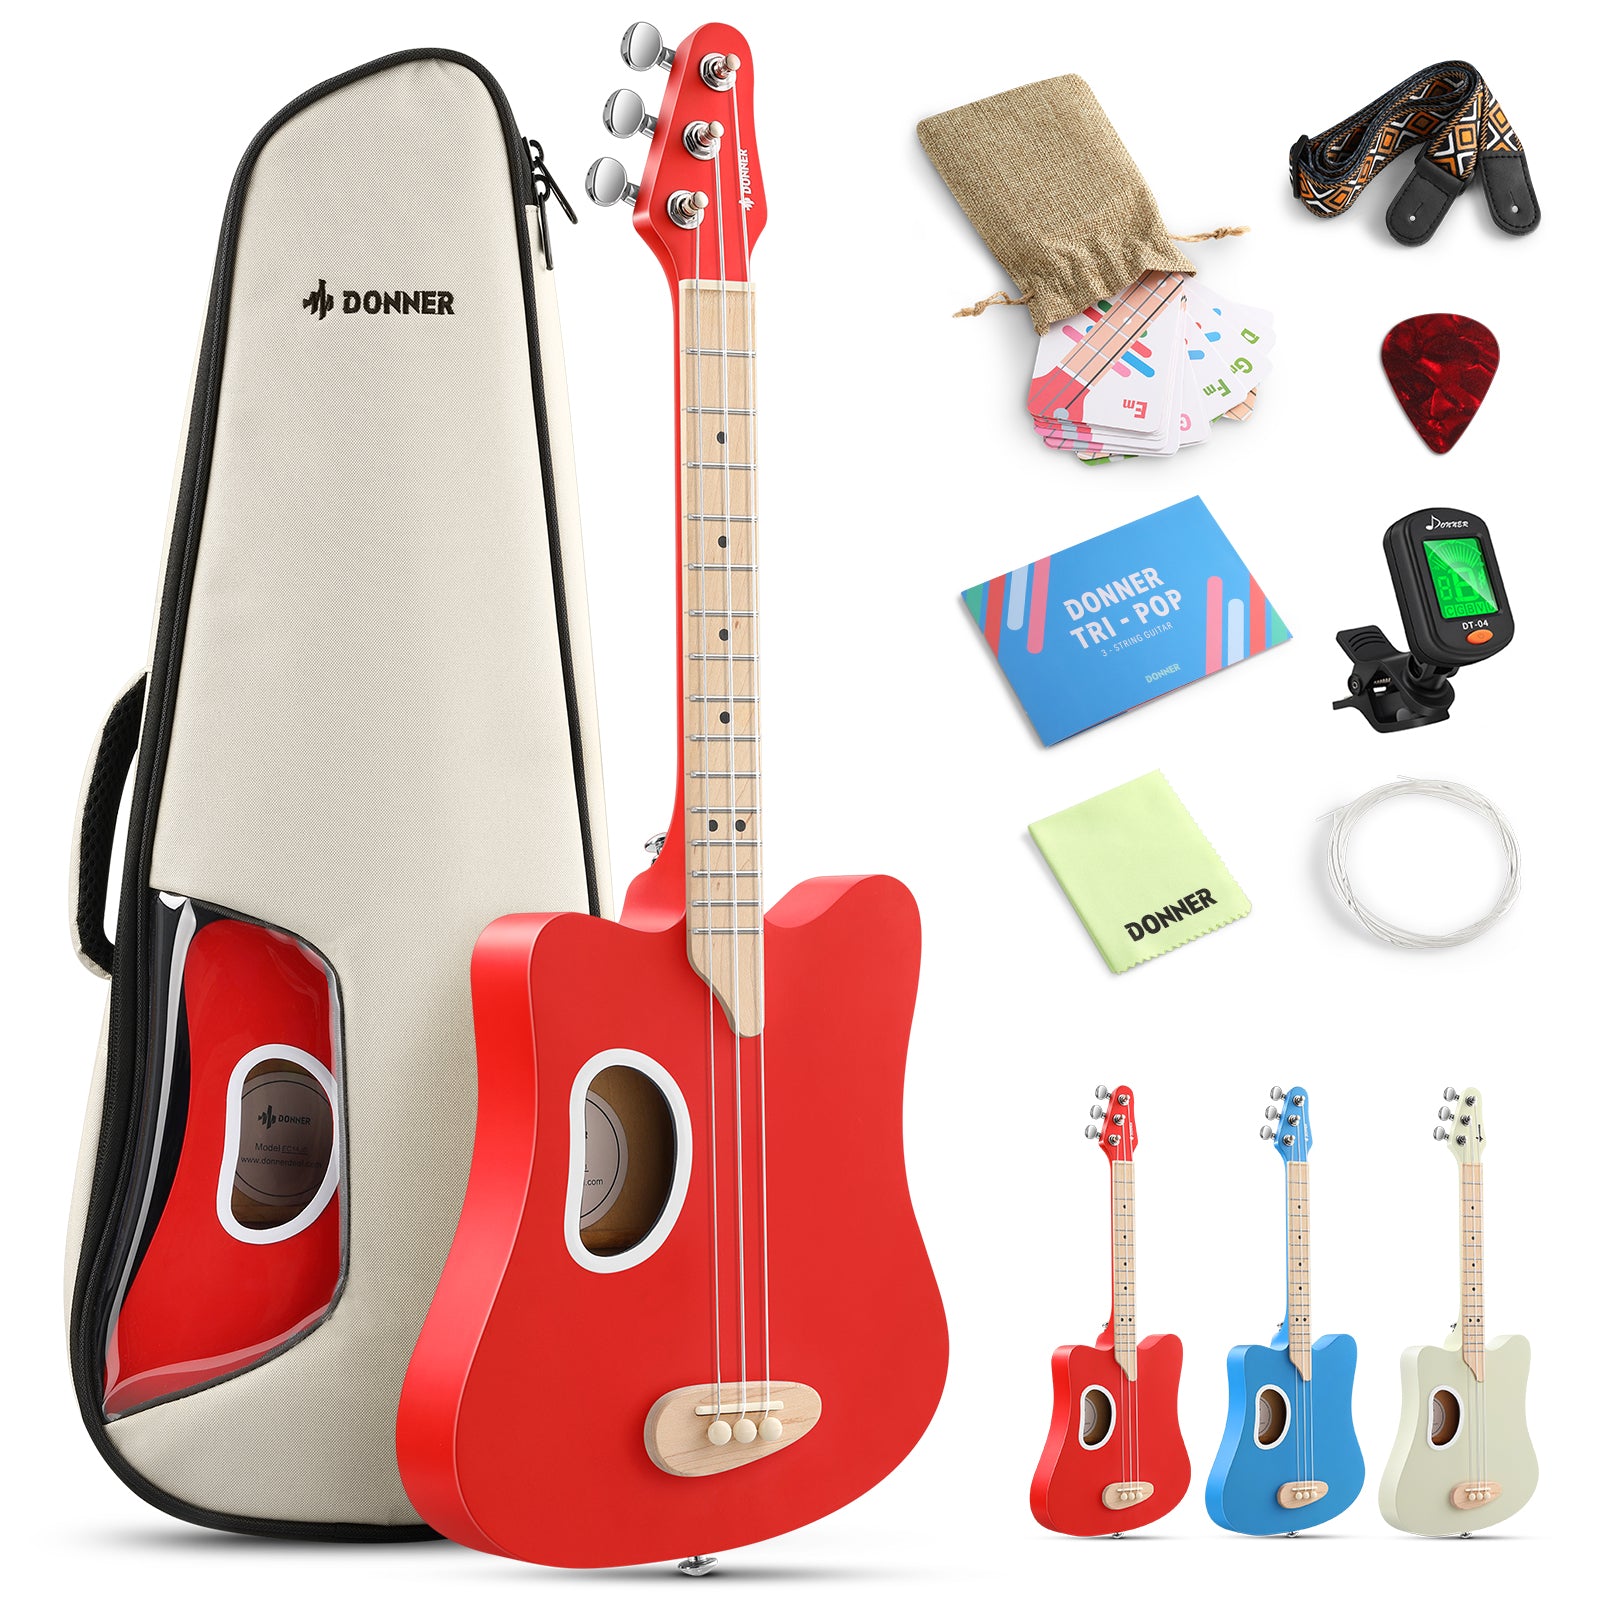 

Donner Tri-pop 3-String Mini Guitar for Kids Gift